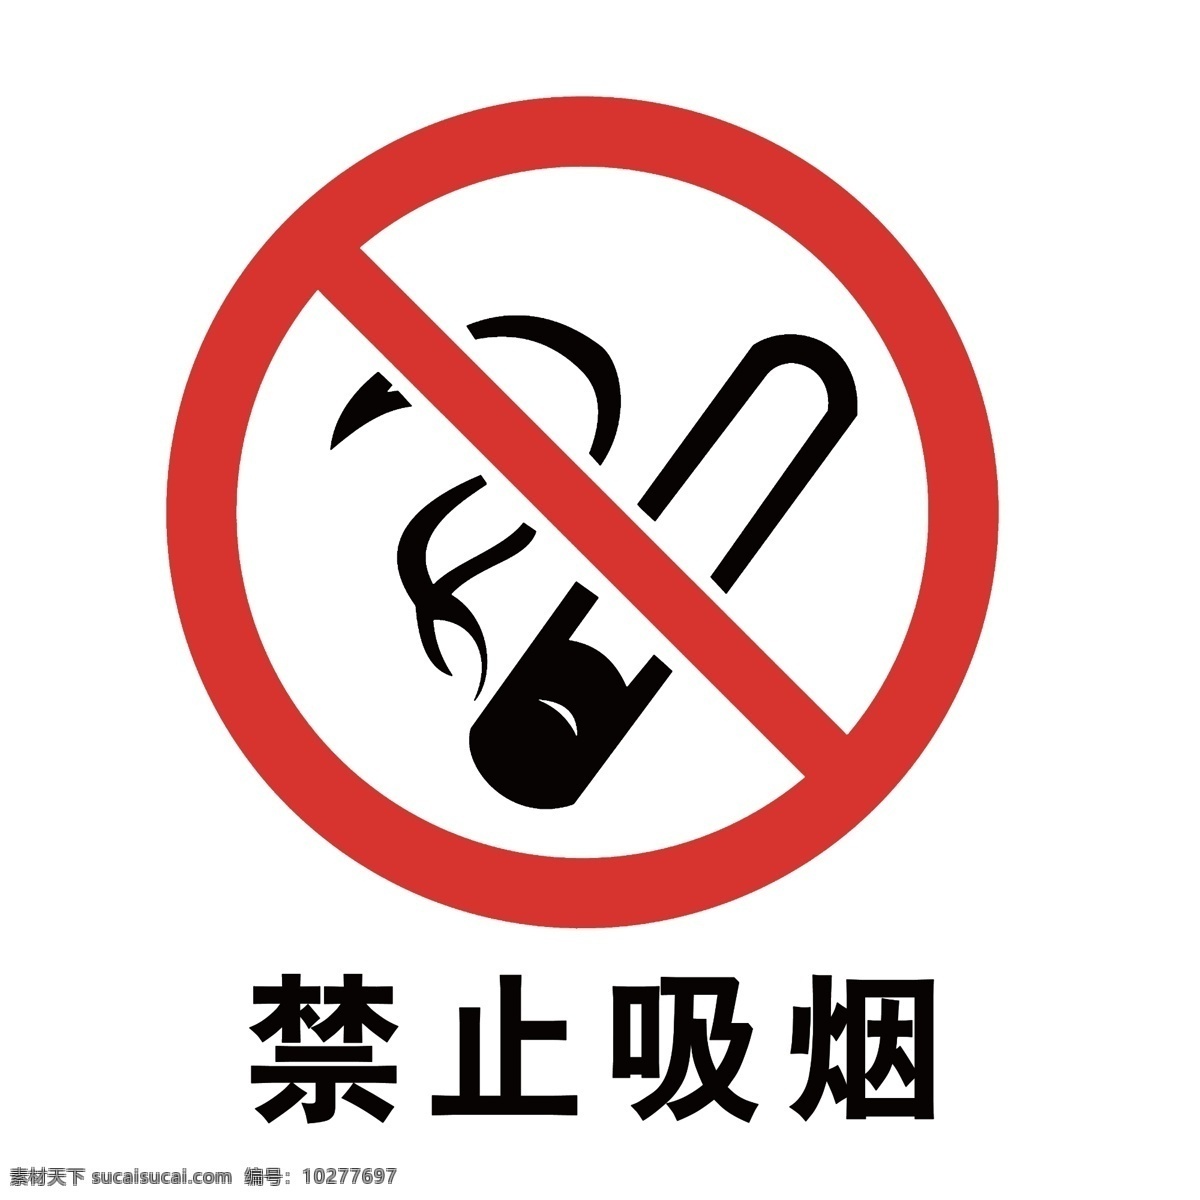 禁止 吸烟 标志 禁止吸烟 禁止吸烟标志 严禁吸烟 严禁吸烟标志 logo